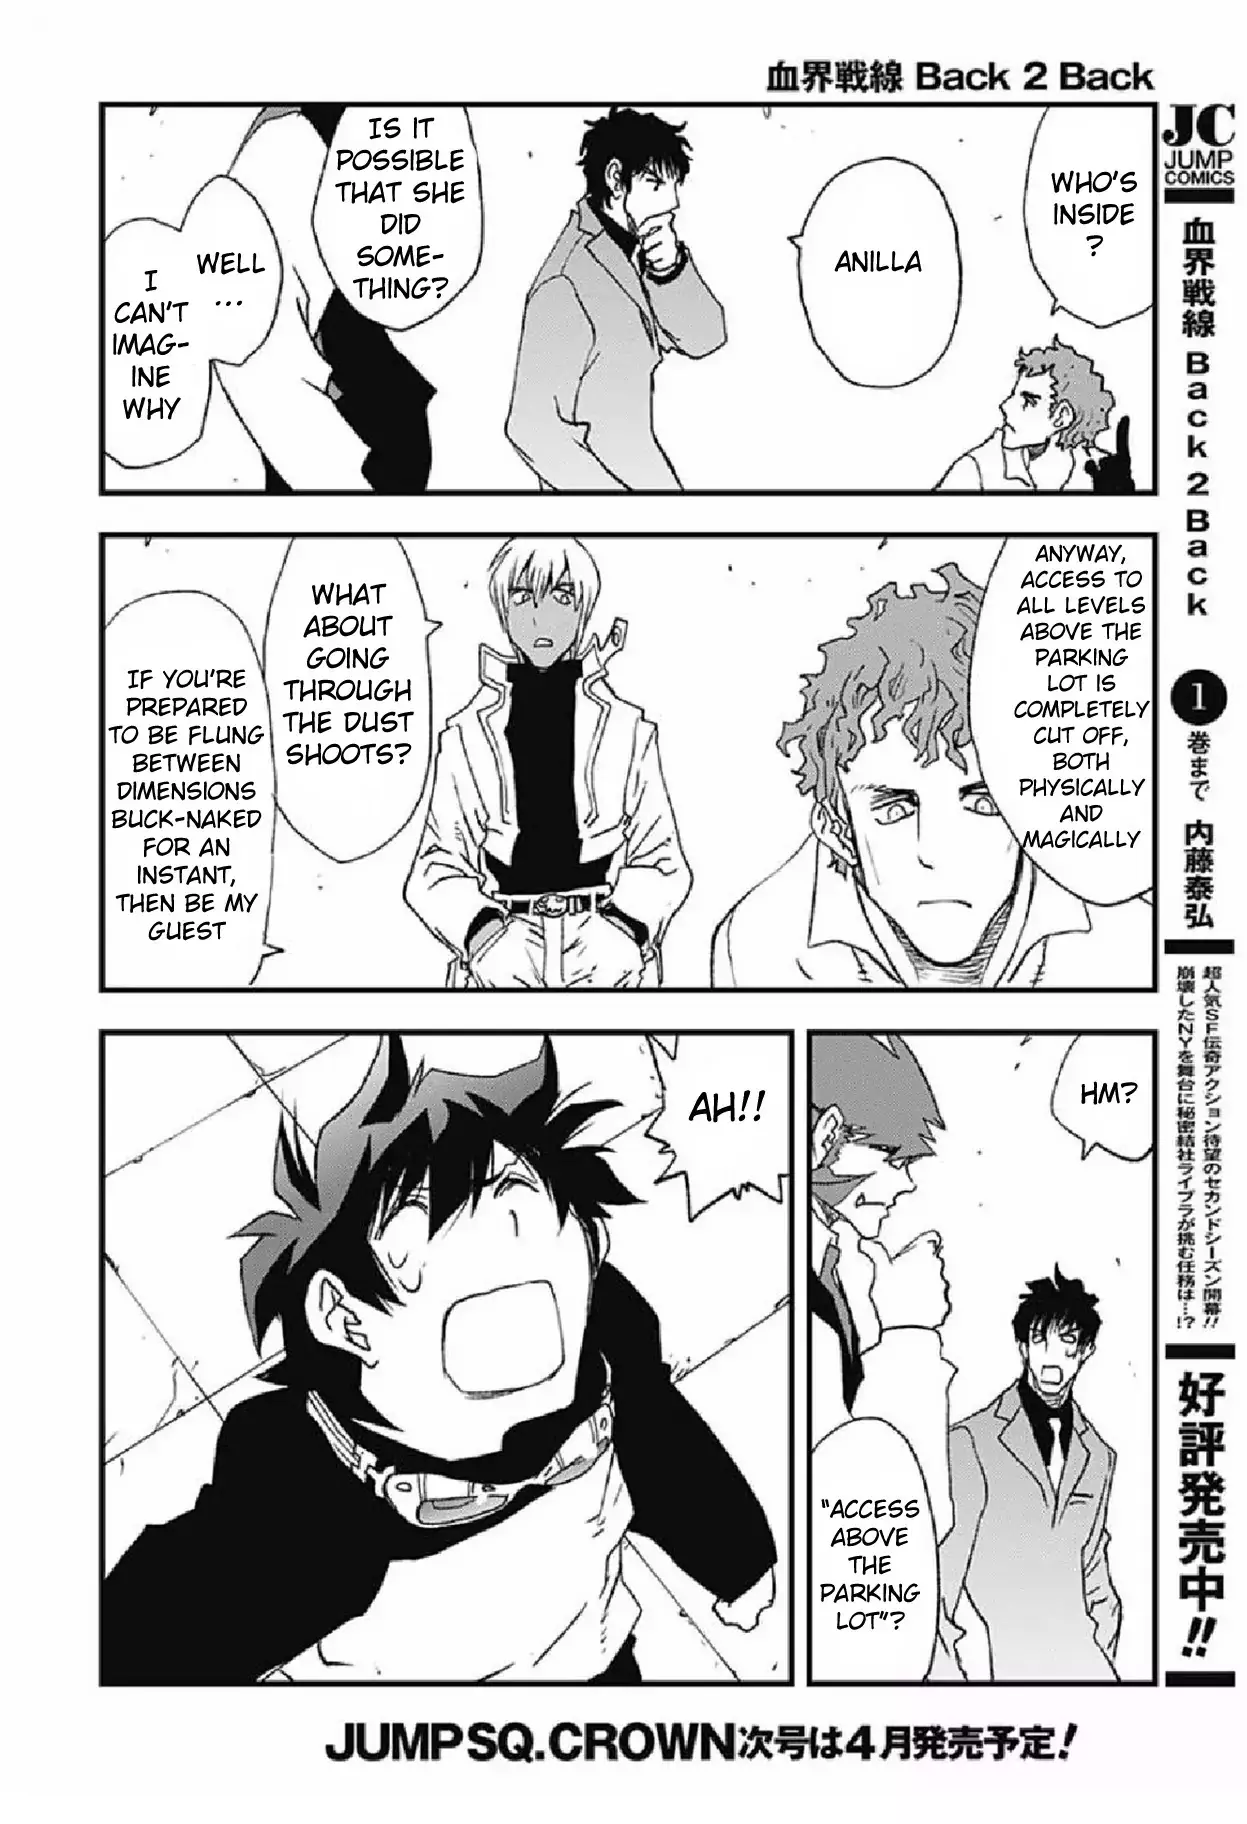 Kekkai Sensen - Back 2 Back - 5 page 46